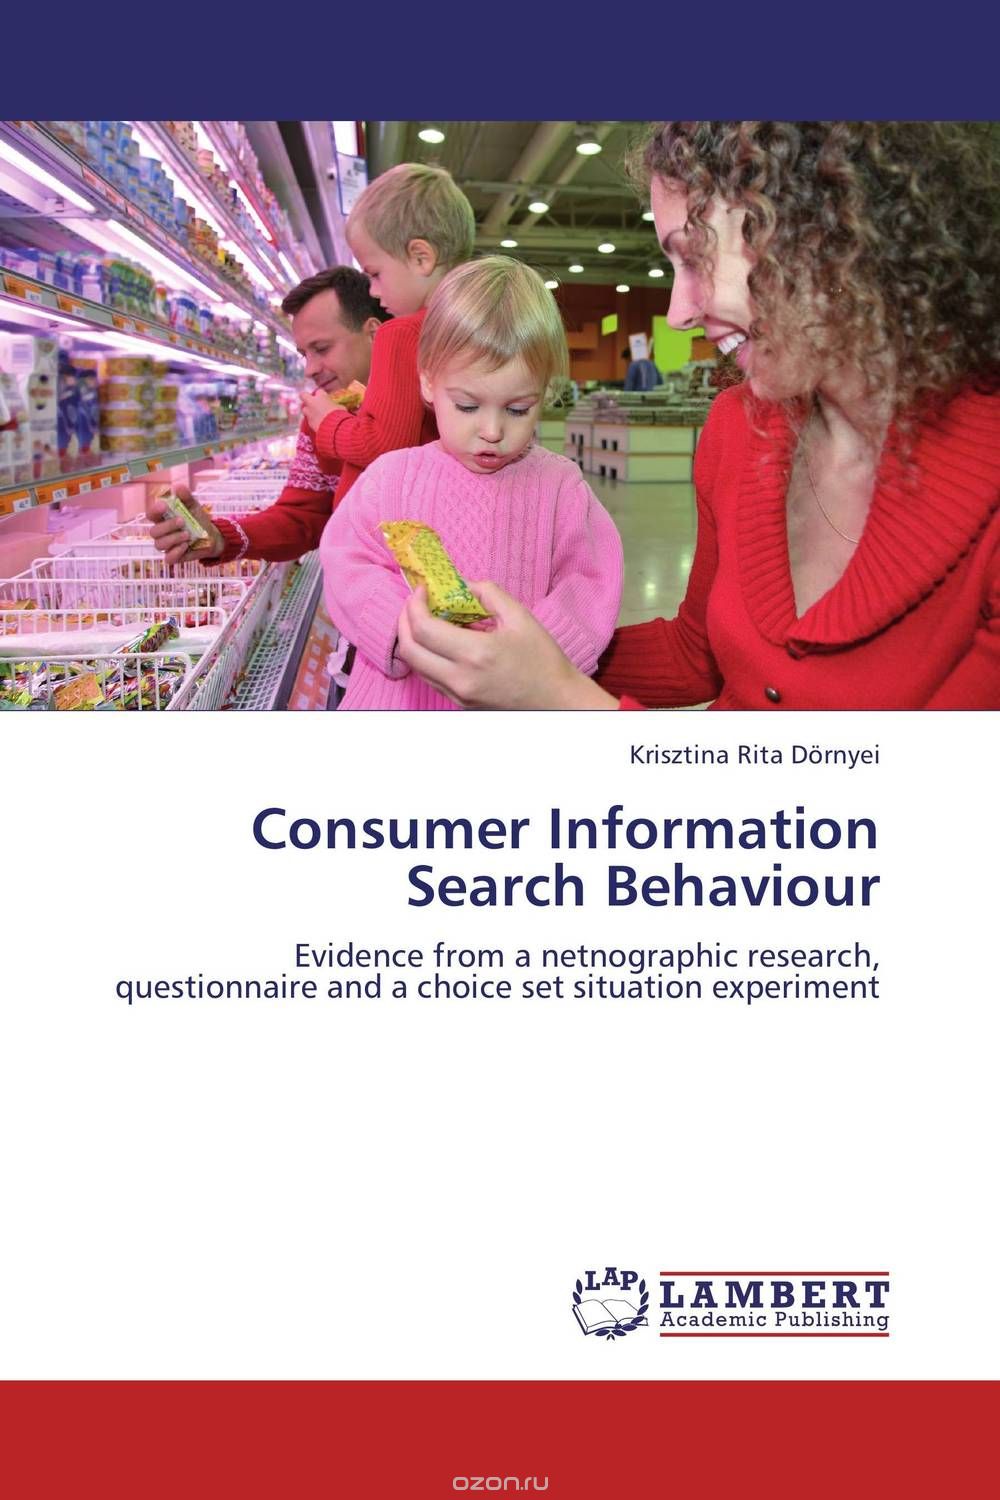 Скачать книгу "Consumer Information Search Behaviour"